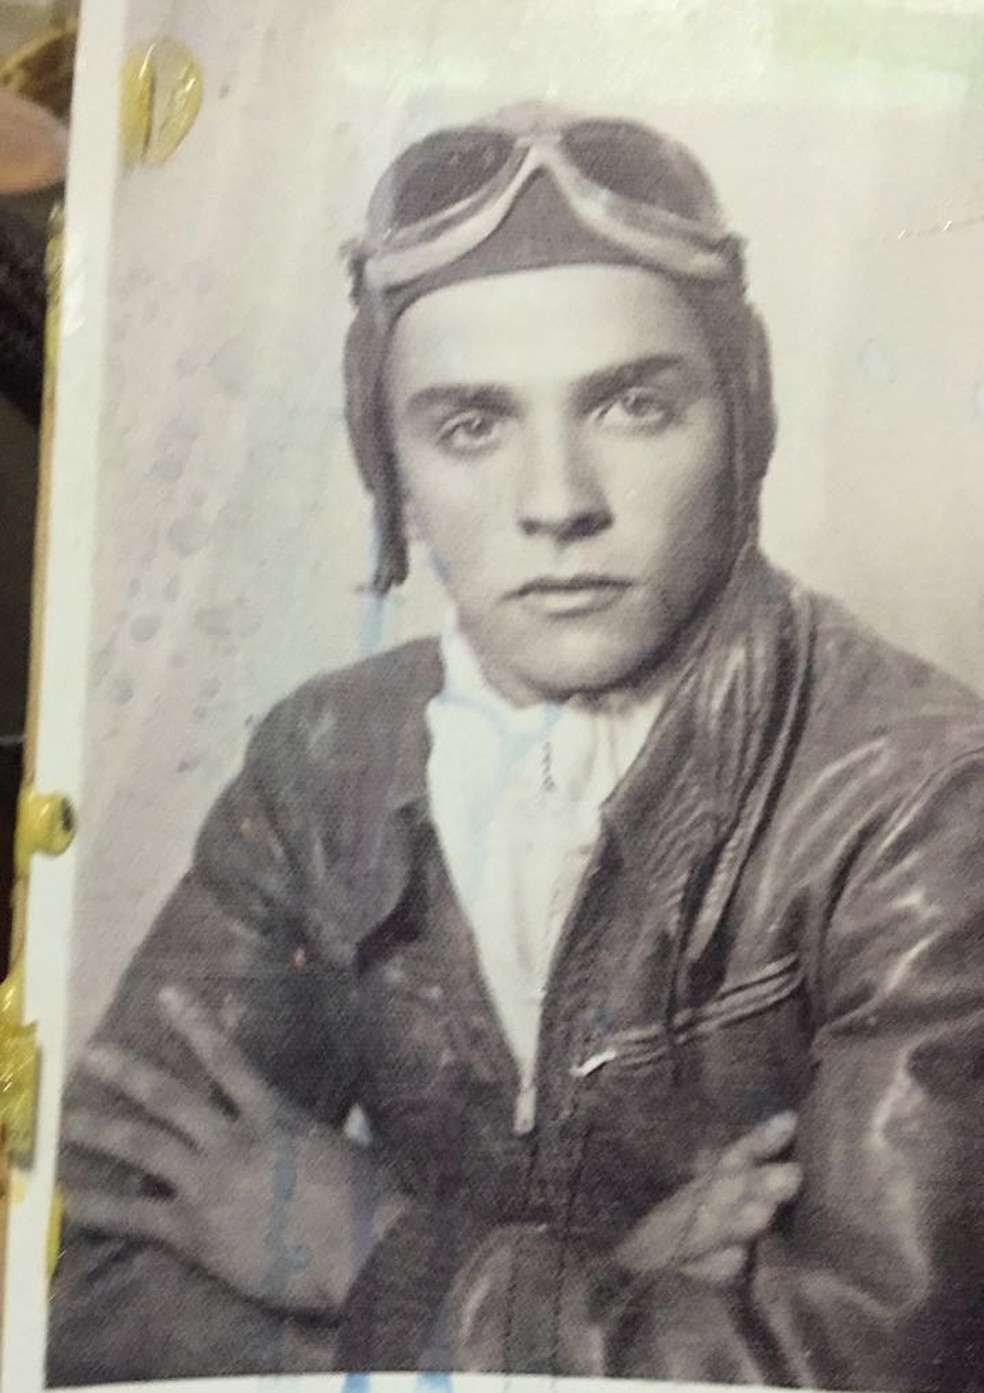 Pai de piloto Wagner filho morreu em acidente aéreo em 1971 — Foto: Arquivo pessoal 